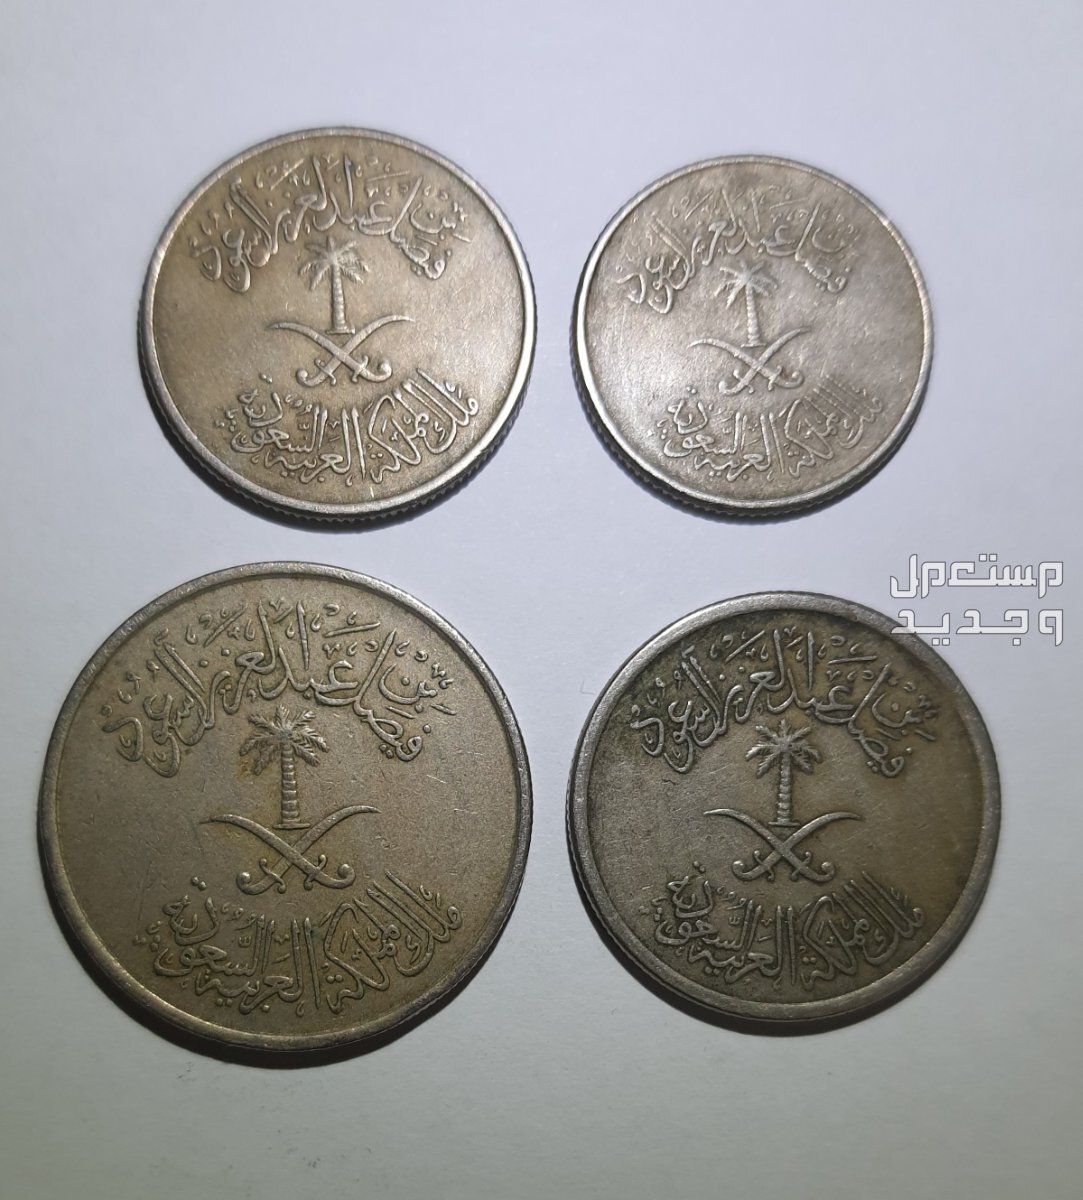 العملة المعدنية عهد الملك فيصل والملك خالد